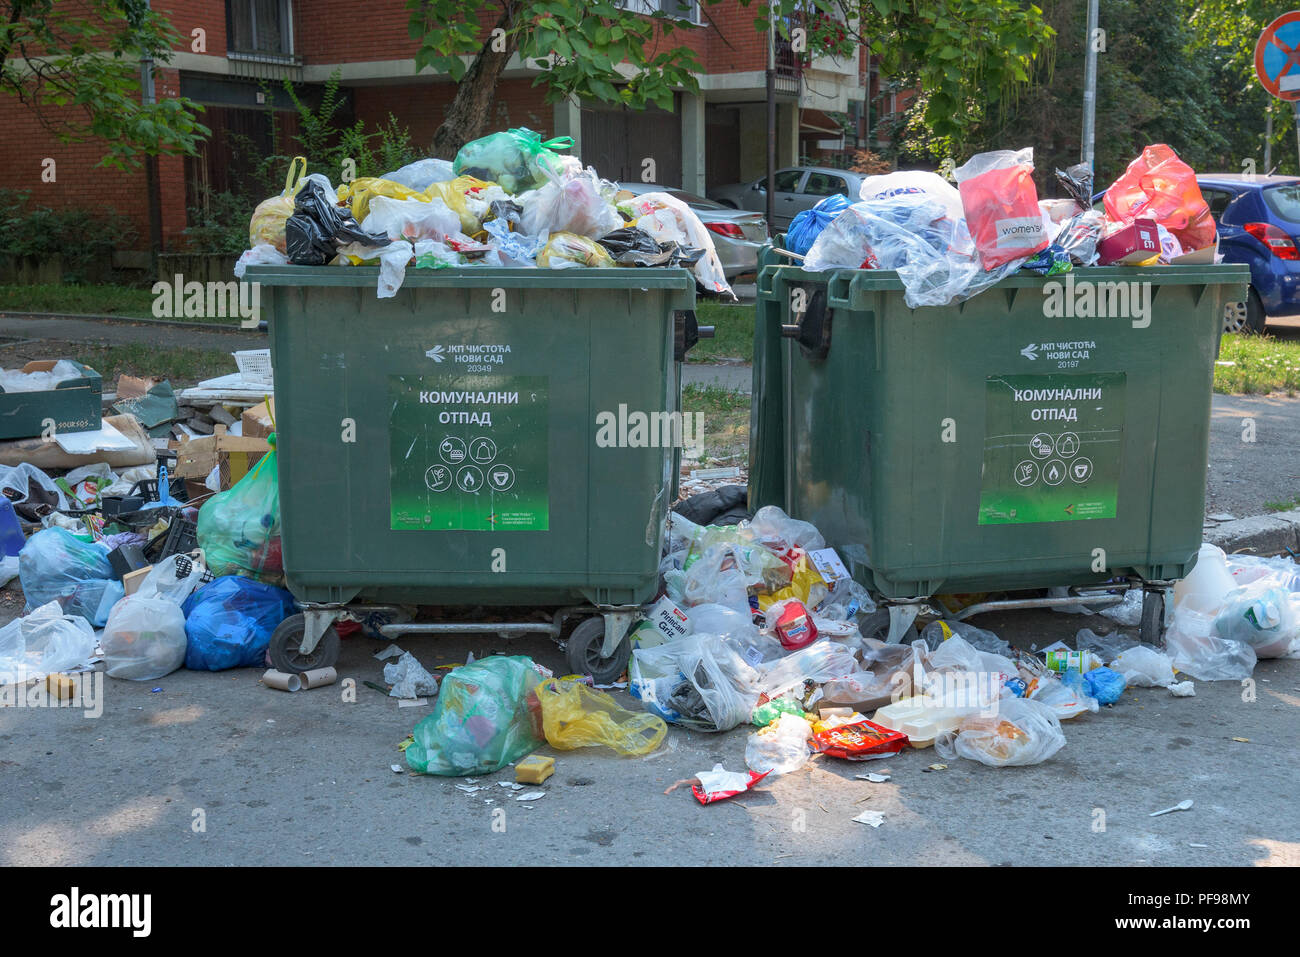 NOVI SAD, SERBIE - le 18 août 2018 : les déchets solides municipaux ou communaux des conteneurs à ordures déborde de Novi Sad pendant le week-end, d'illustration modifier Banque D'Images